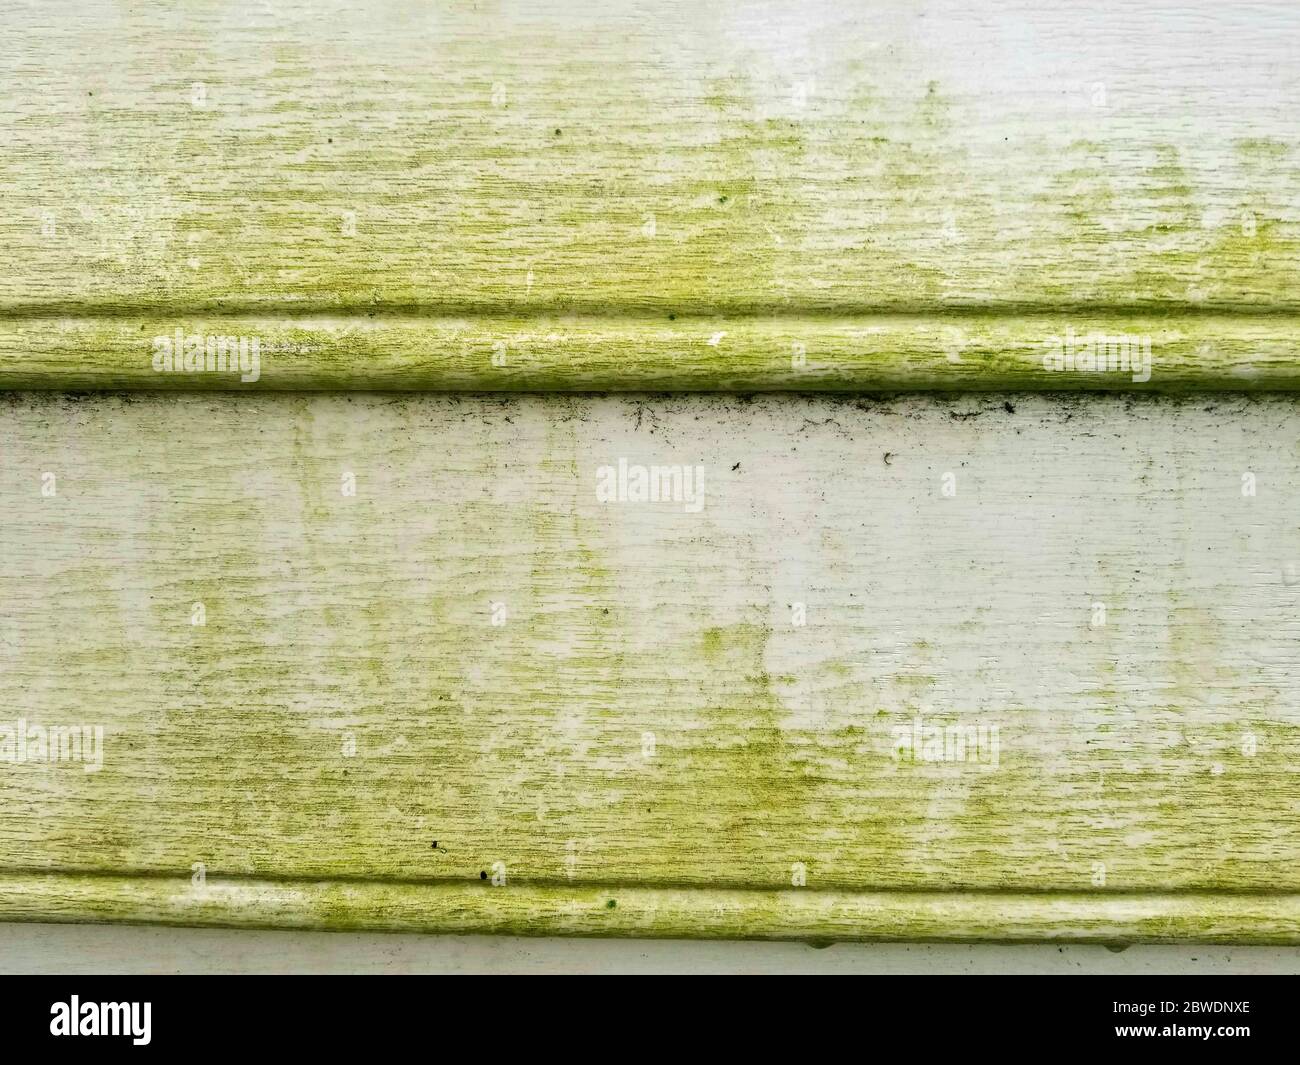 Moule vert sur parement en vinyle développé après la pluie Banque D'Images